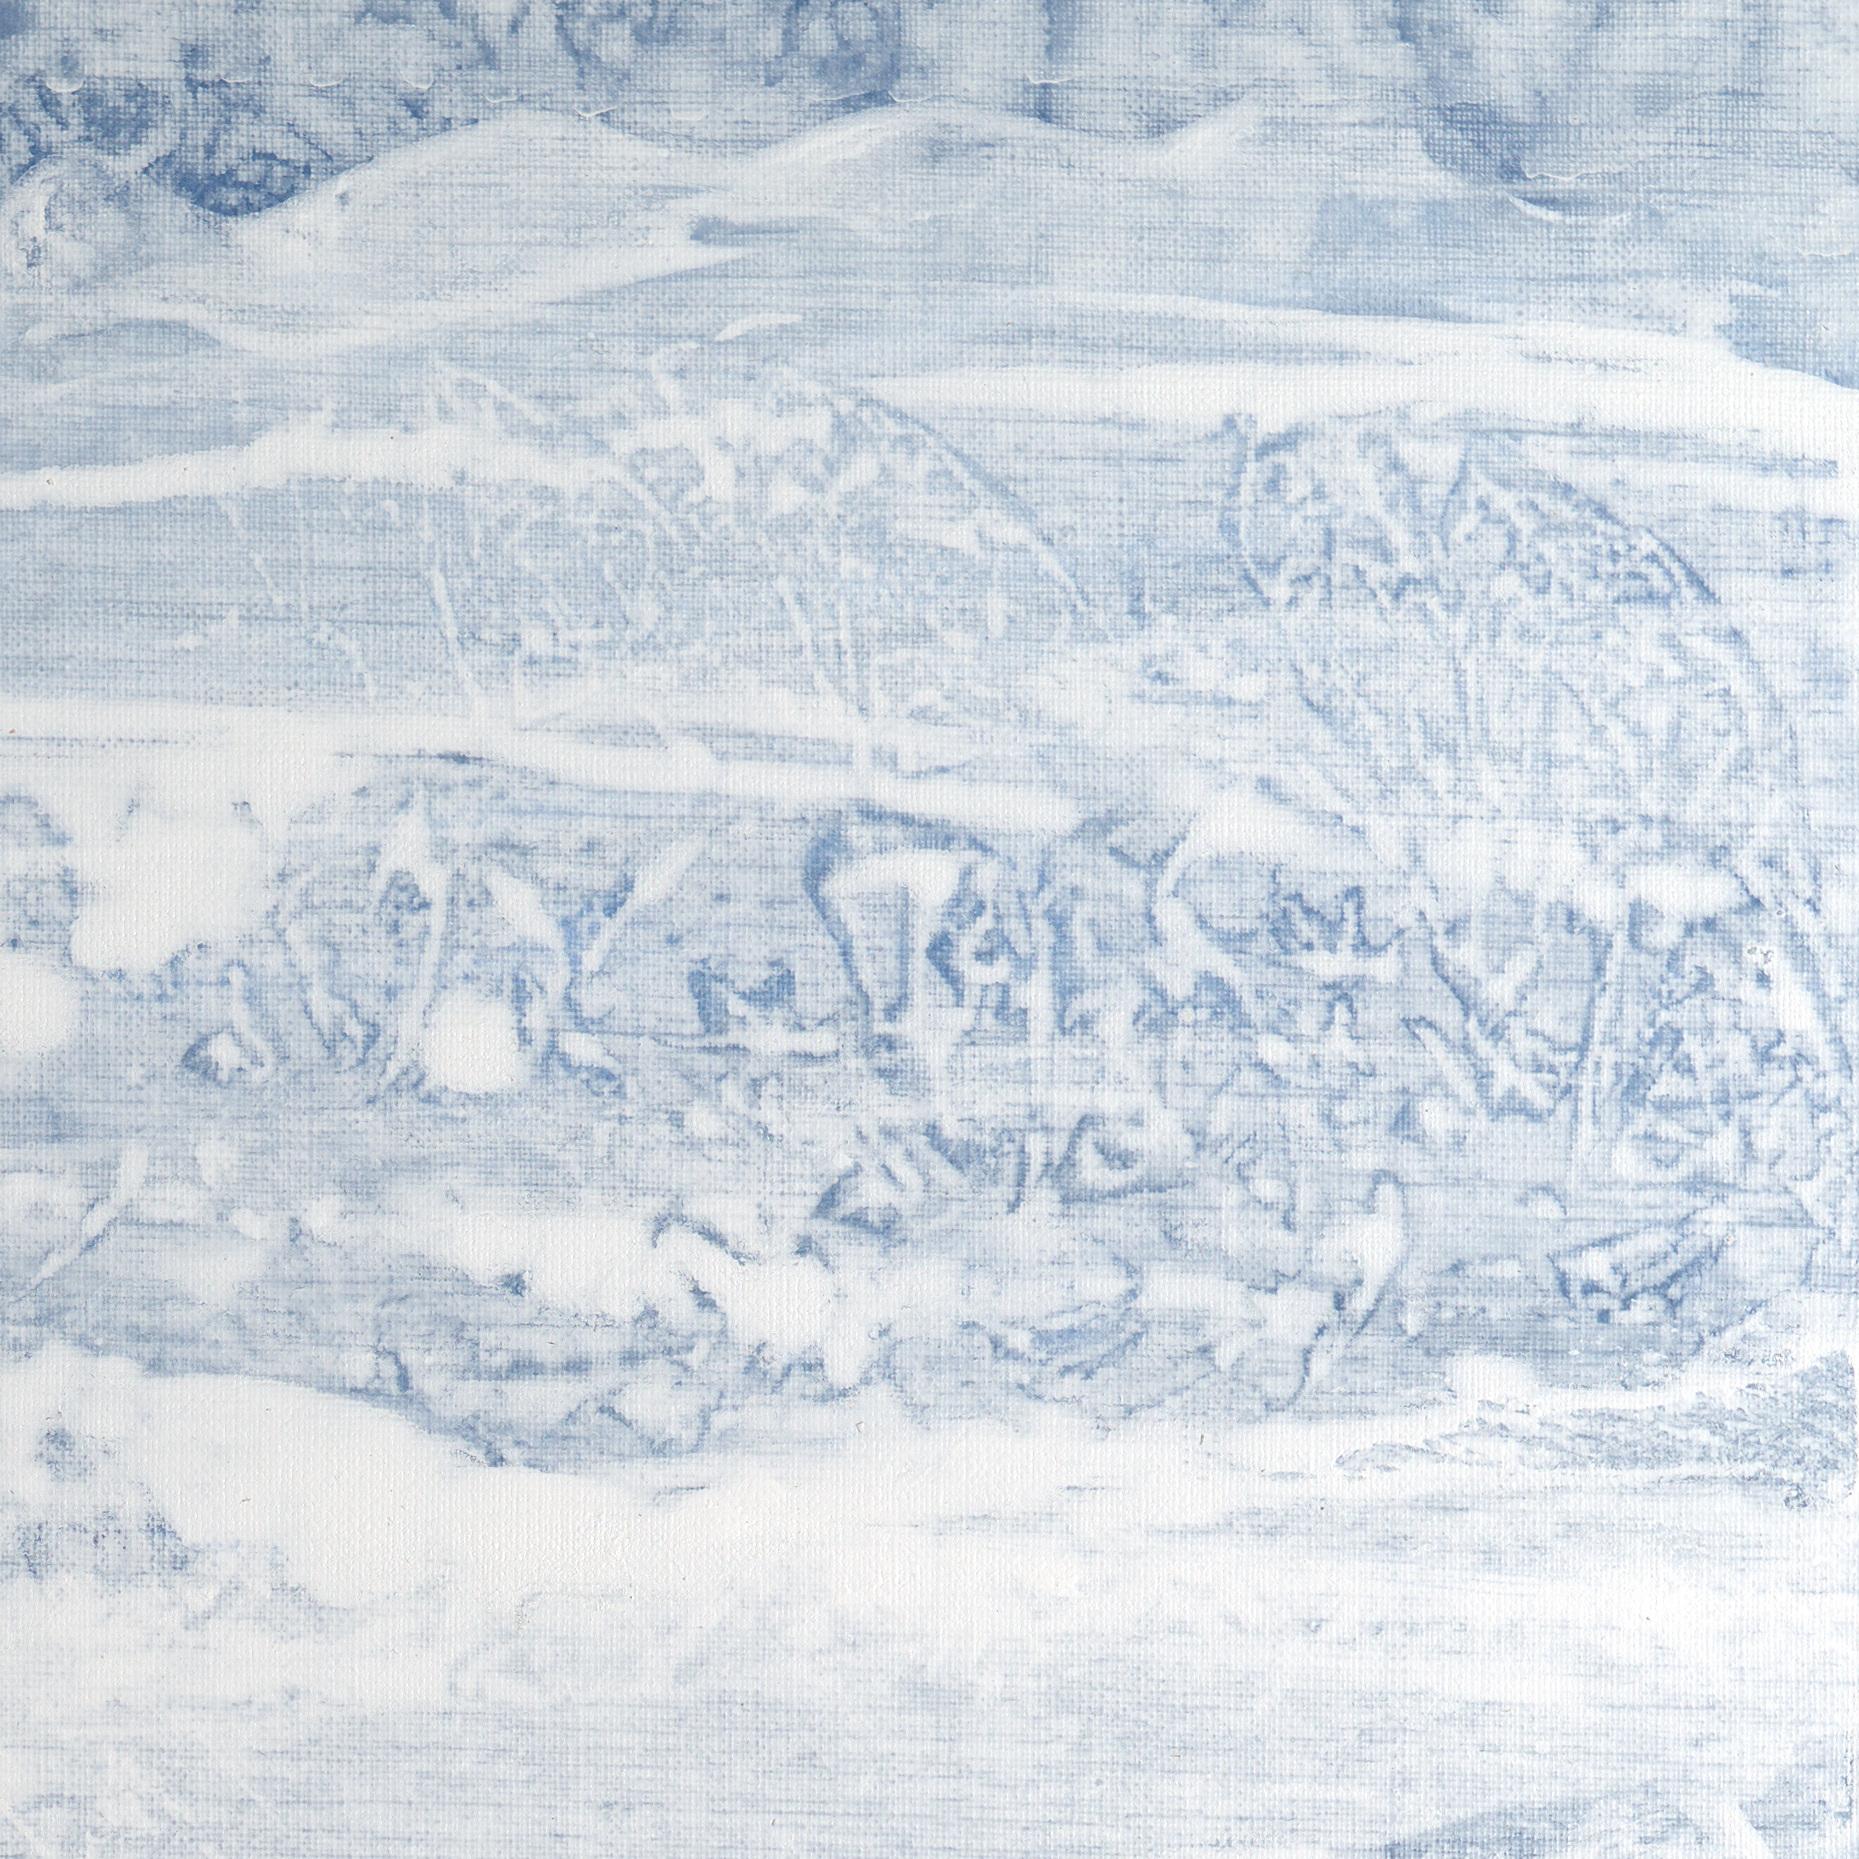 Cette œuvre d'art abstraite de l'artiste Françoise Duprat représente un galet bleu placé dans un paysage marin minimaliste gris-blanc. Dans sa première carrière, Françoise a surtout peint des œuvres figuratives et symbolistes, et dans sa période